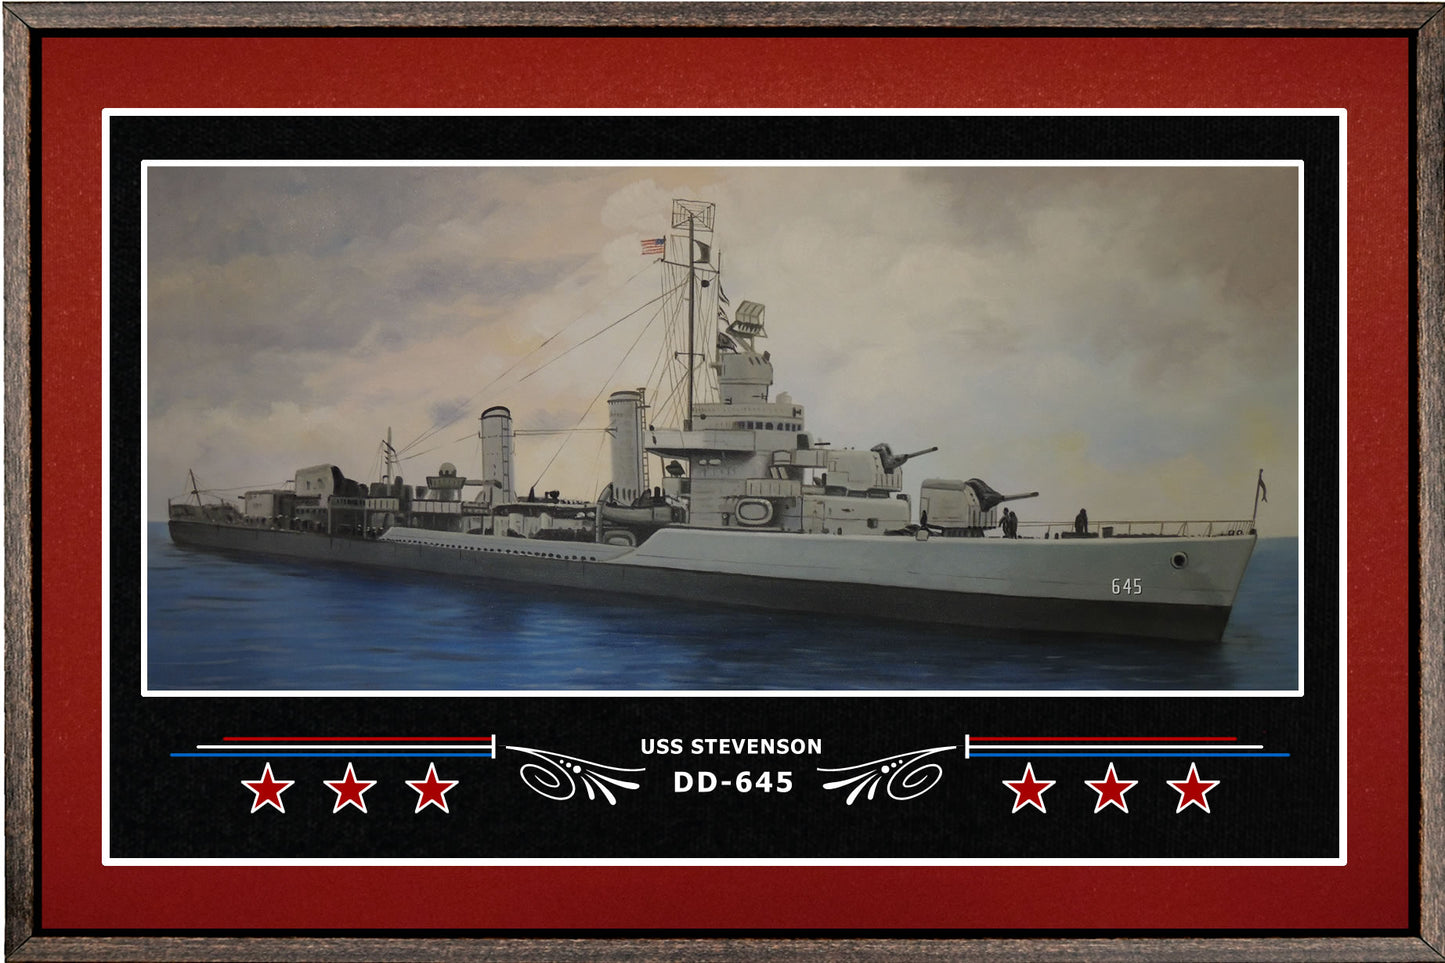 USS STEVENSON DD 645 BOX FRAMED CANVAS ART BURGUNDY